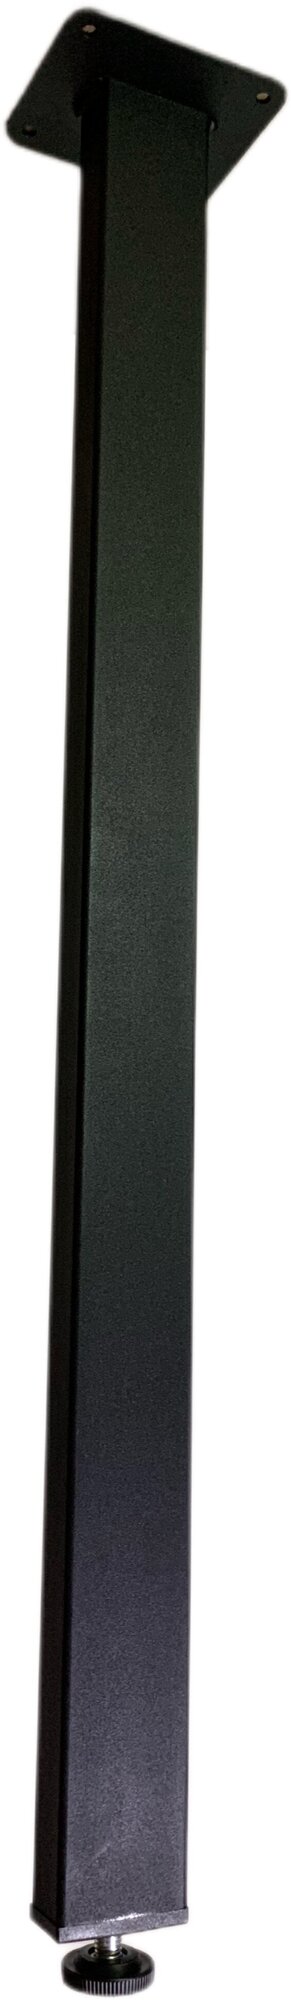 Ножки мебельные для стола металлические регулируемые, высота 85 см, комплект 4 штуки, опора в стиле лофт чёрная, подстолье для столешницы, основание - фотография № 4